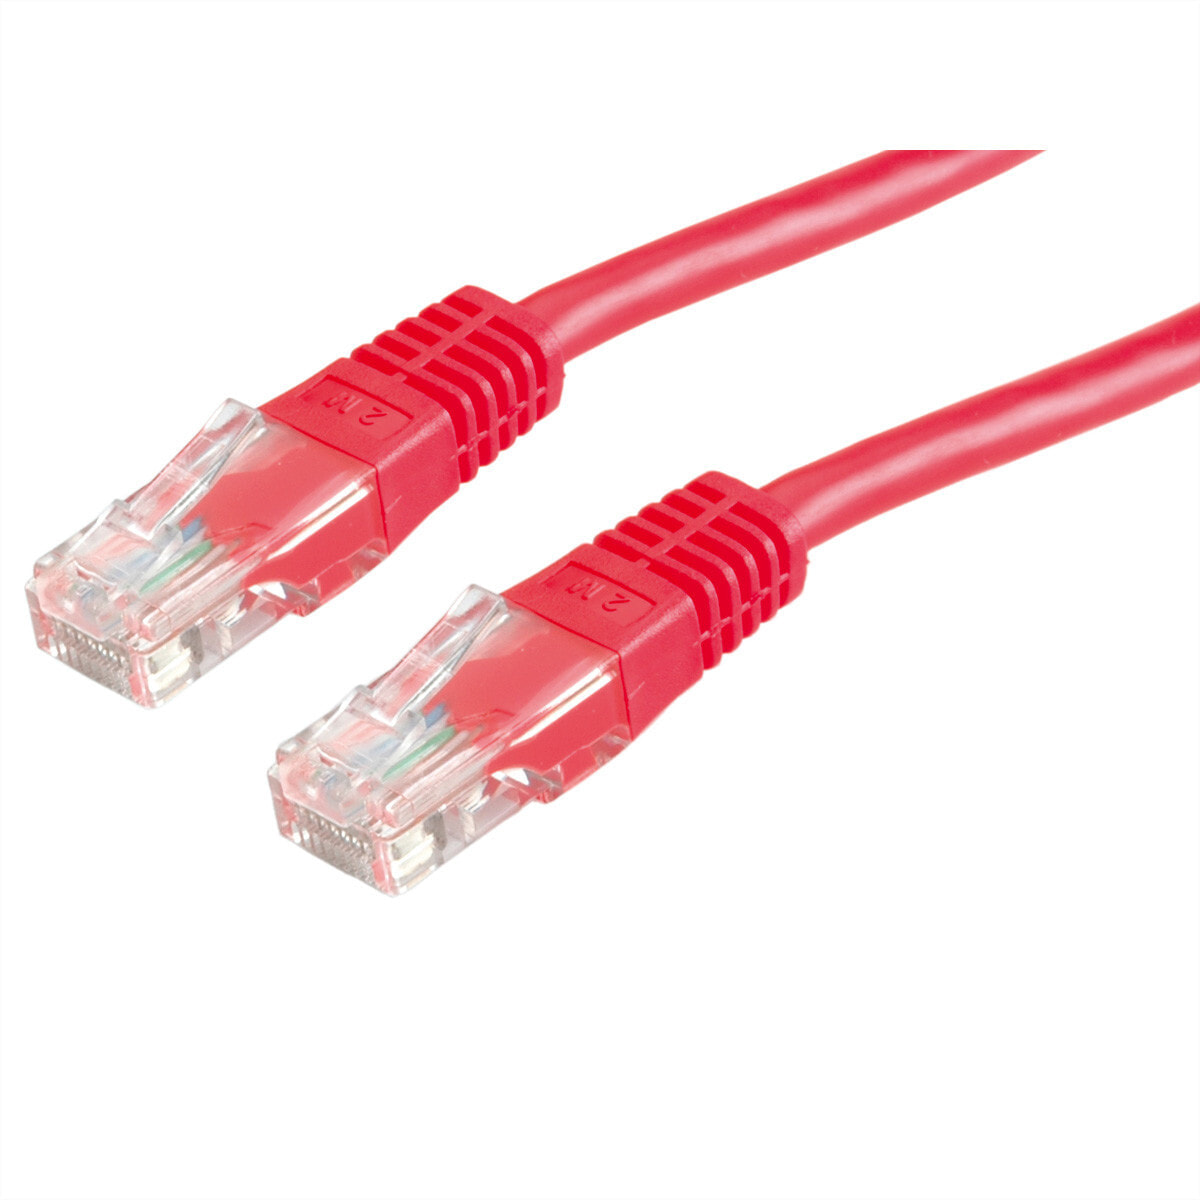 Value UTP Patch Cord Cat.6, red 10 m сетевой кабель Красный 21.99.1581